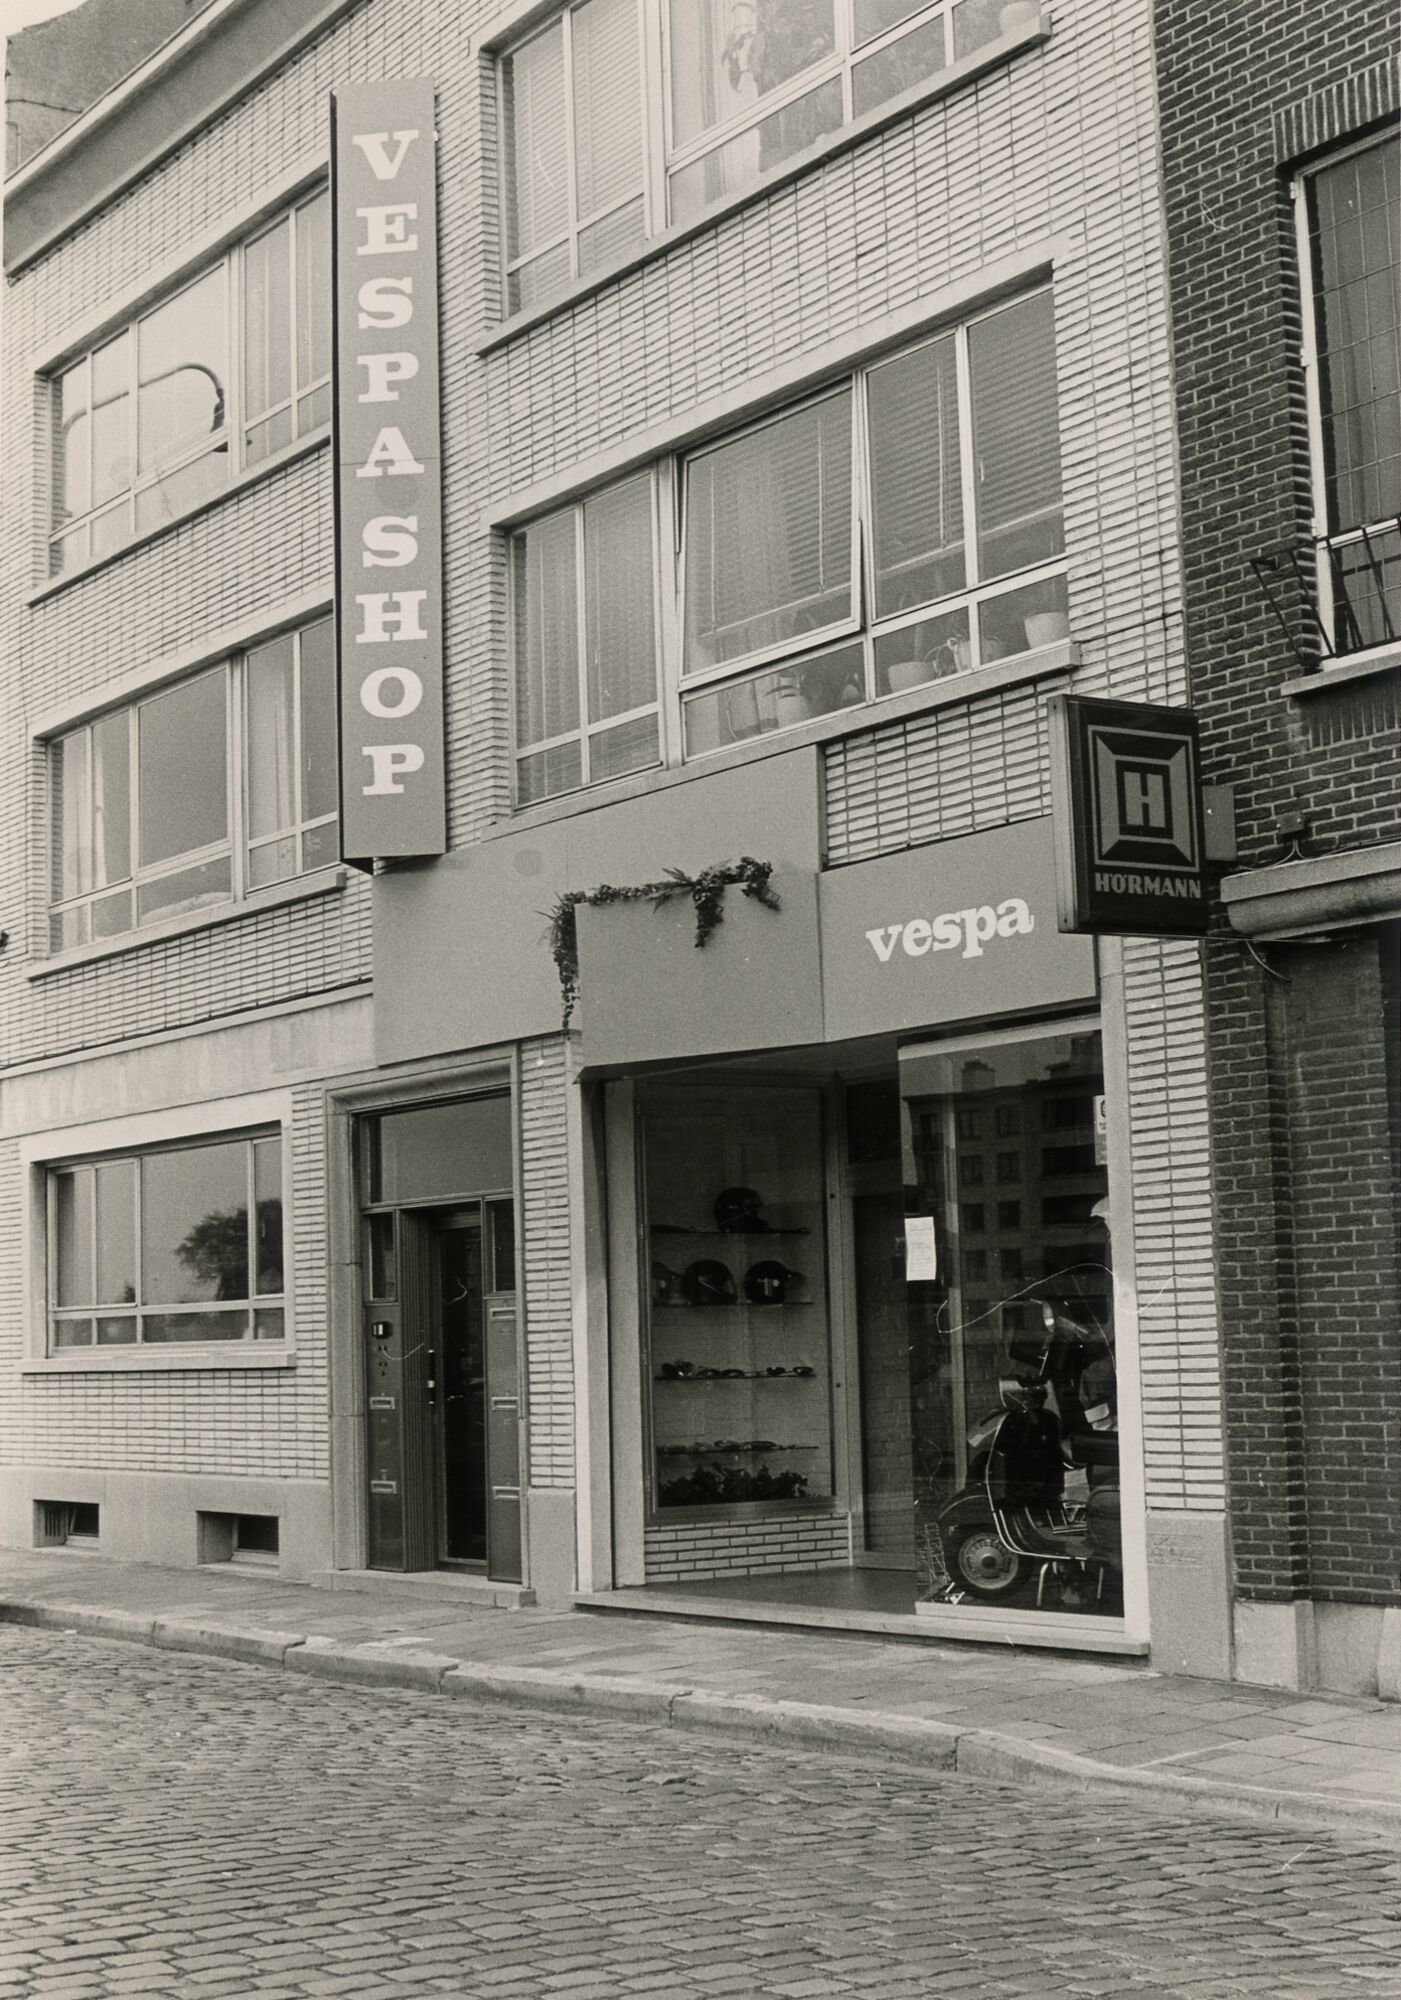 Etalage van motorrijwielhandel Vespashop in Gent